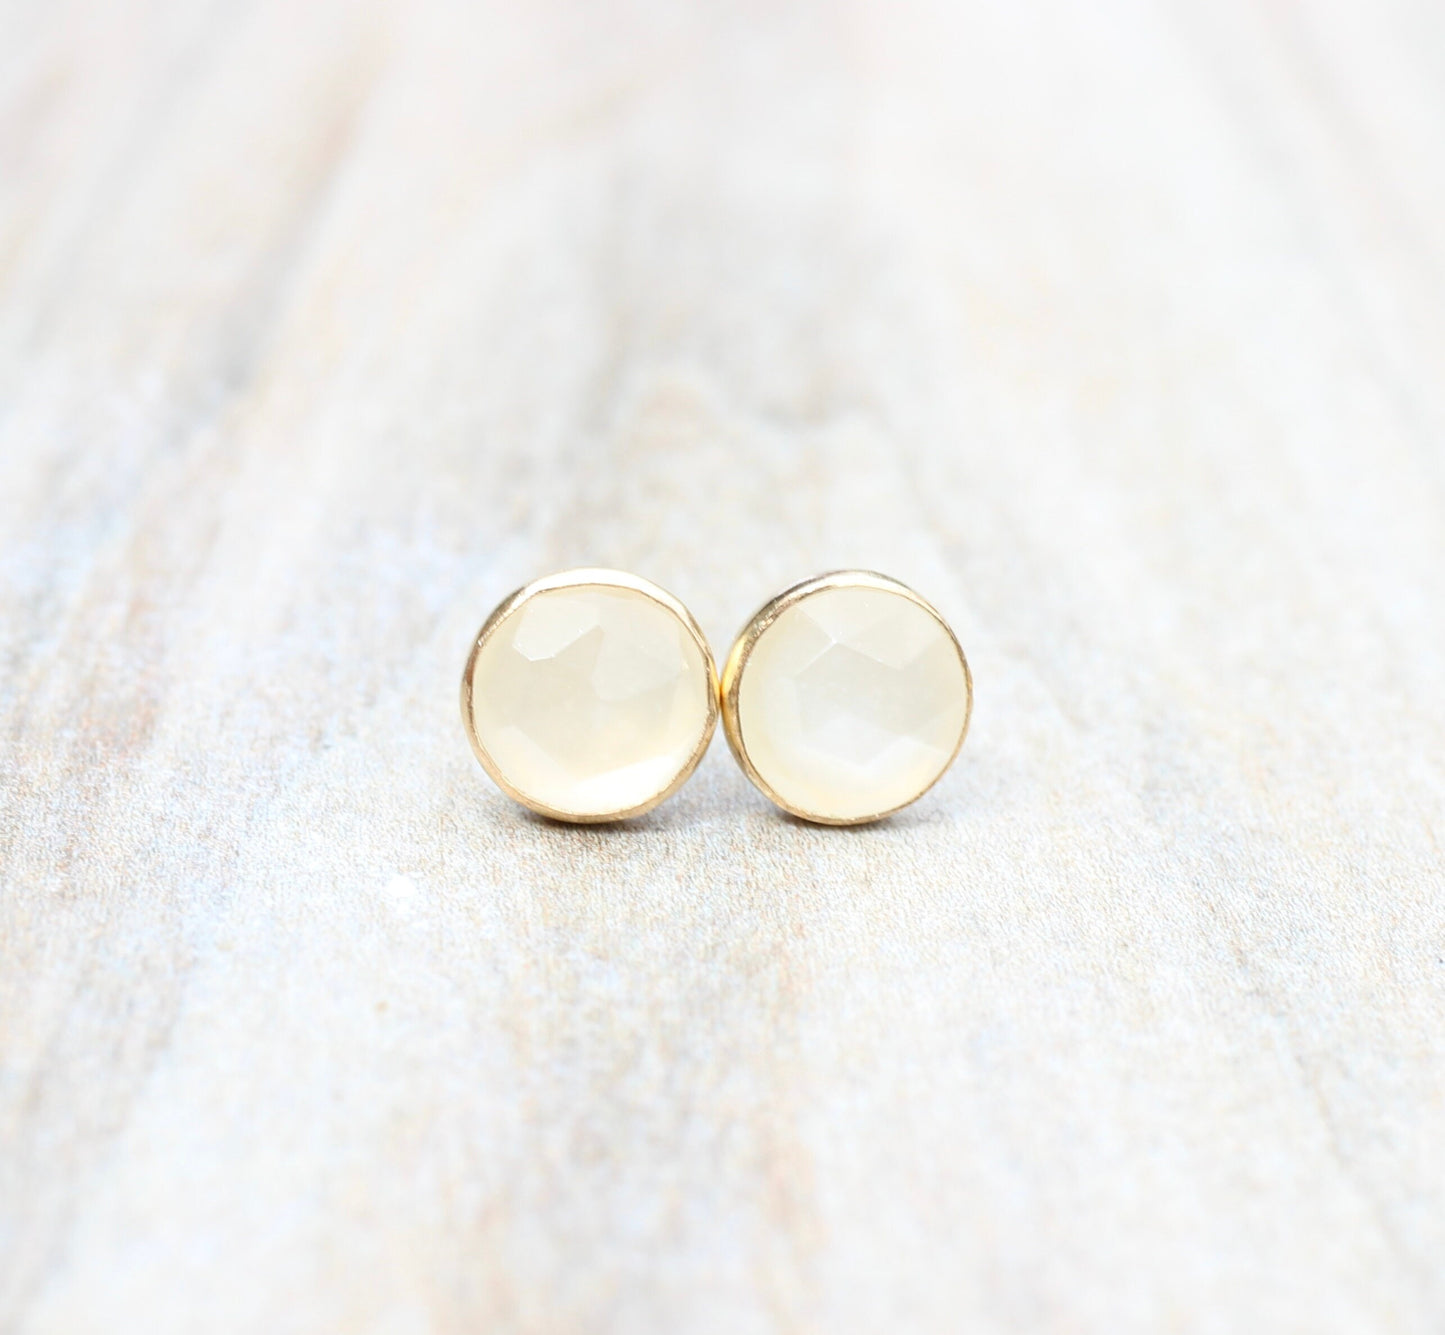 Sterling Silver Moonstone Earrings // Rose Cut White Moonstone Stud Earrings // 6mm Moonstone Cabochon Earrings // Gemstone Studs